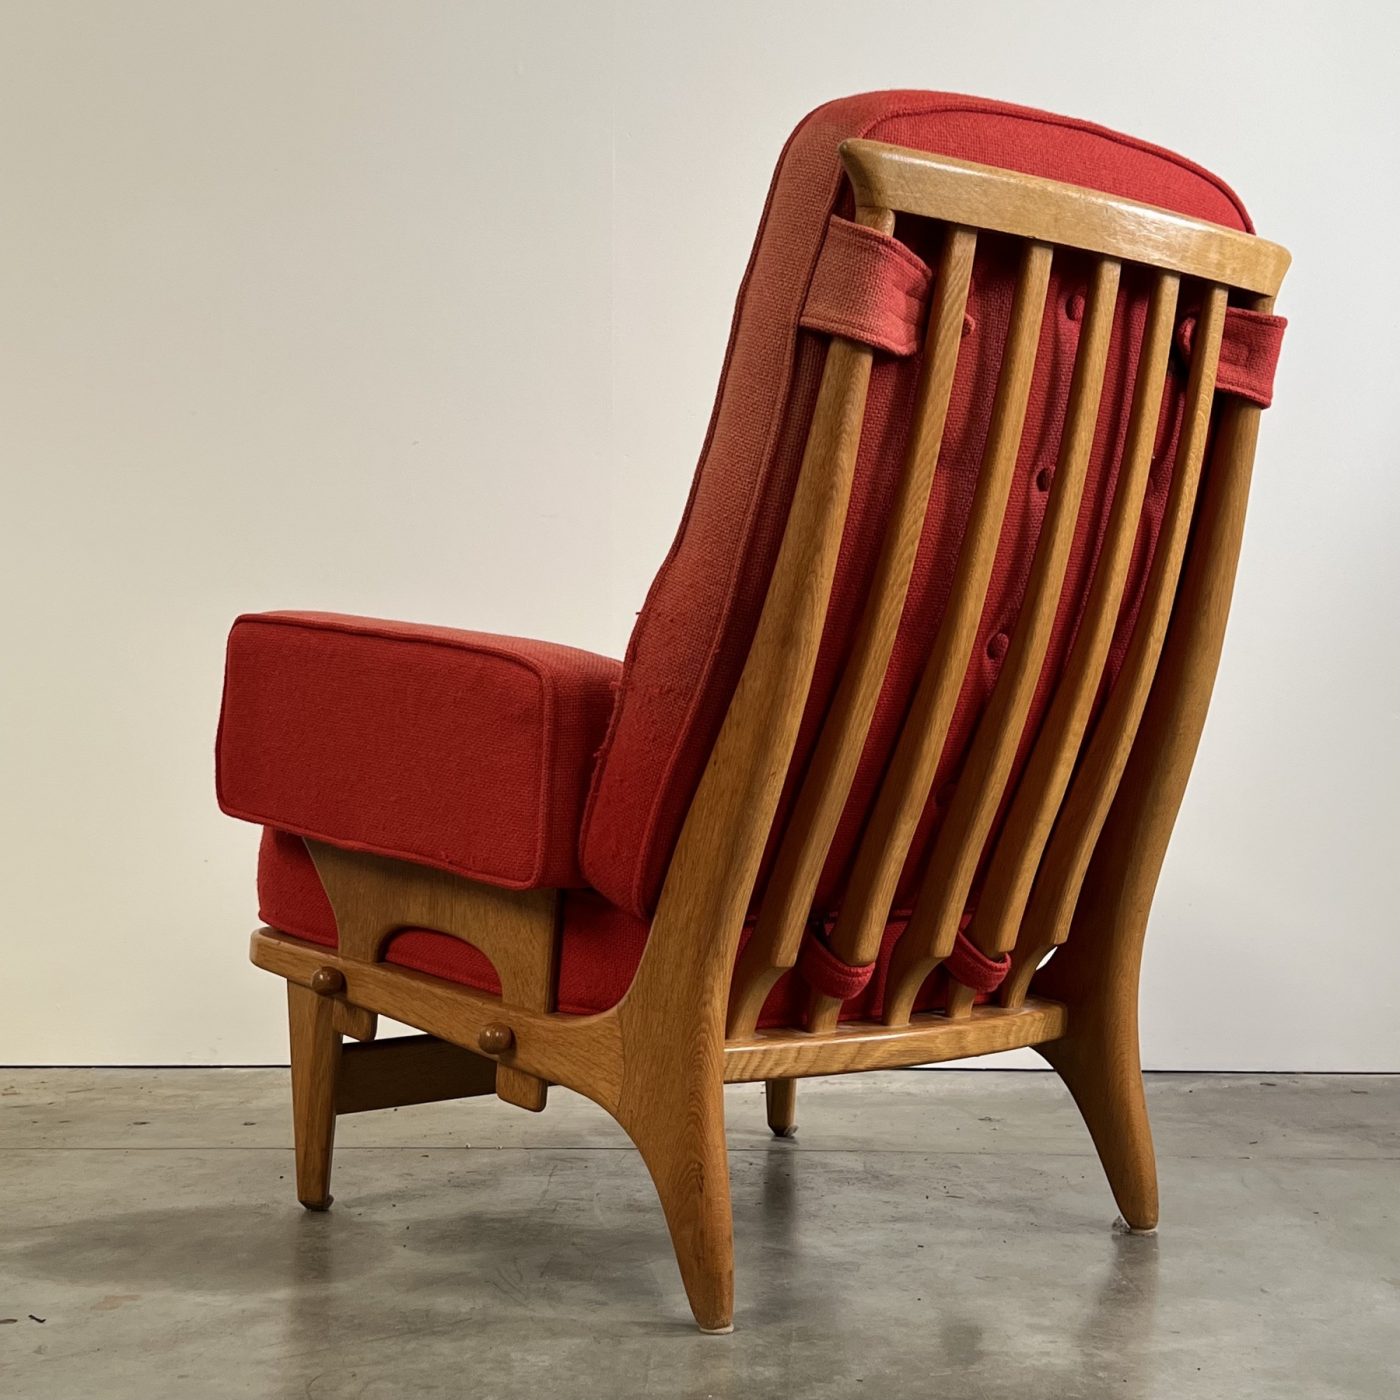 objet-vagabond-guillerme-armchairs0000